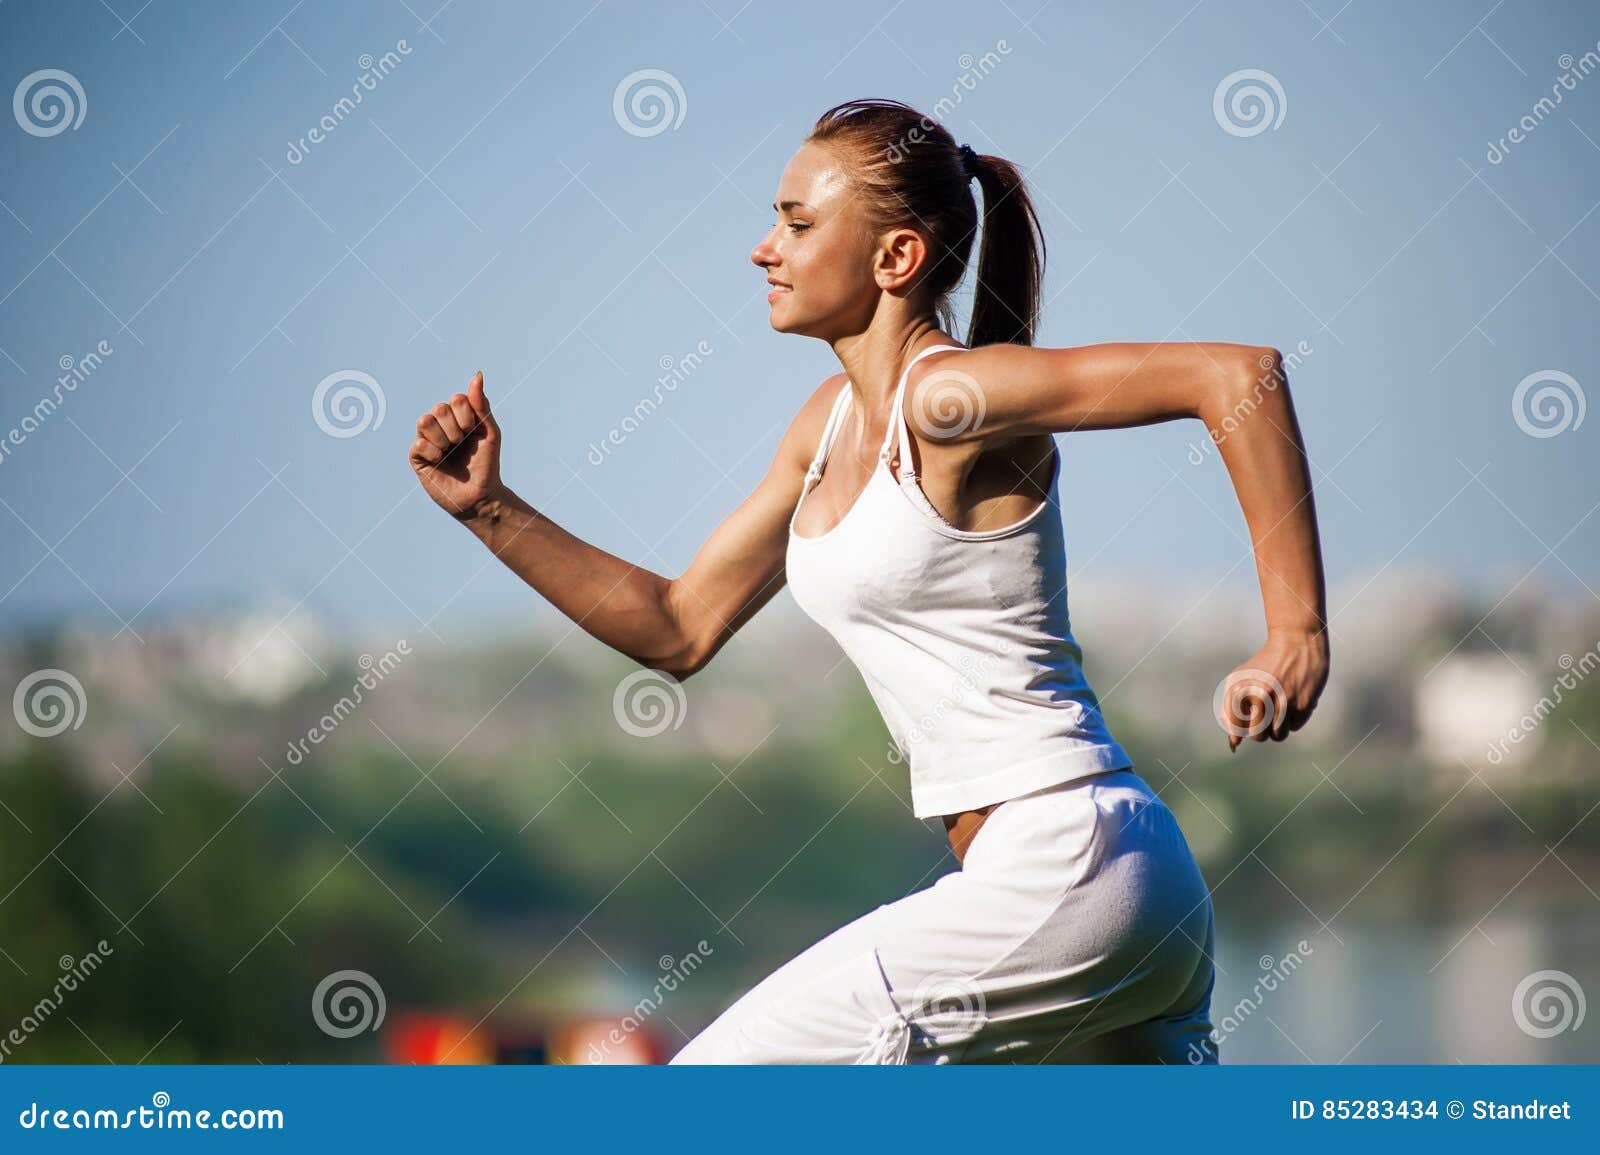 Спорт сток. Сток спорт женщина. Тренировки летом. Оздоровительный эффект систематических занятий бегом. Спортивная девушка дышит.